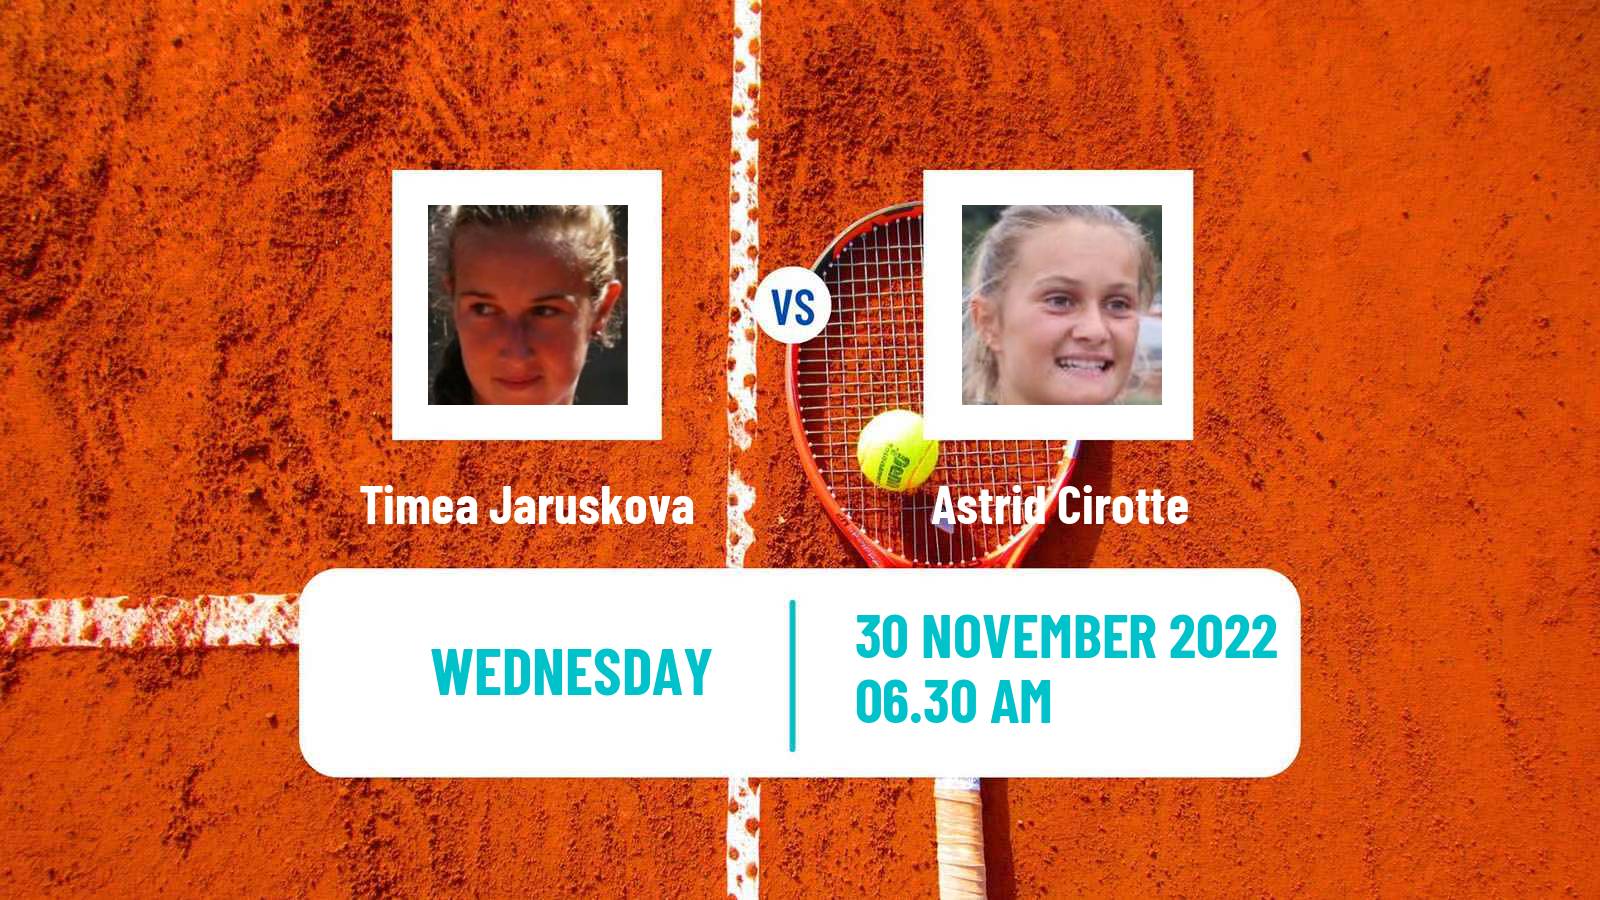 Tennis ITF Tournaments Timea Jaruskova - Astrid Cirotte